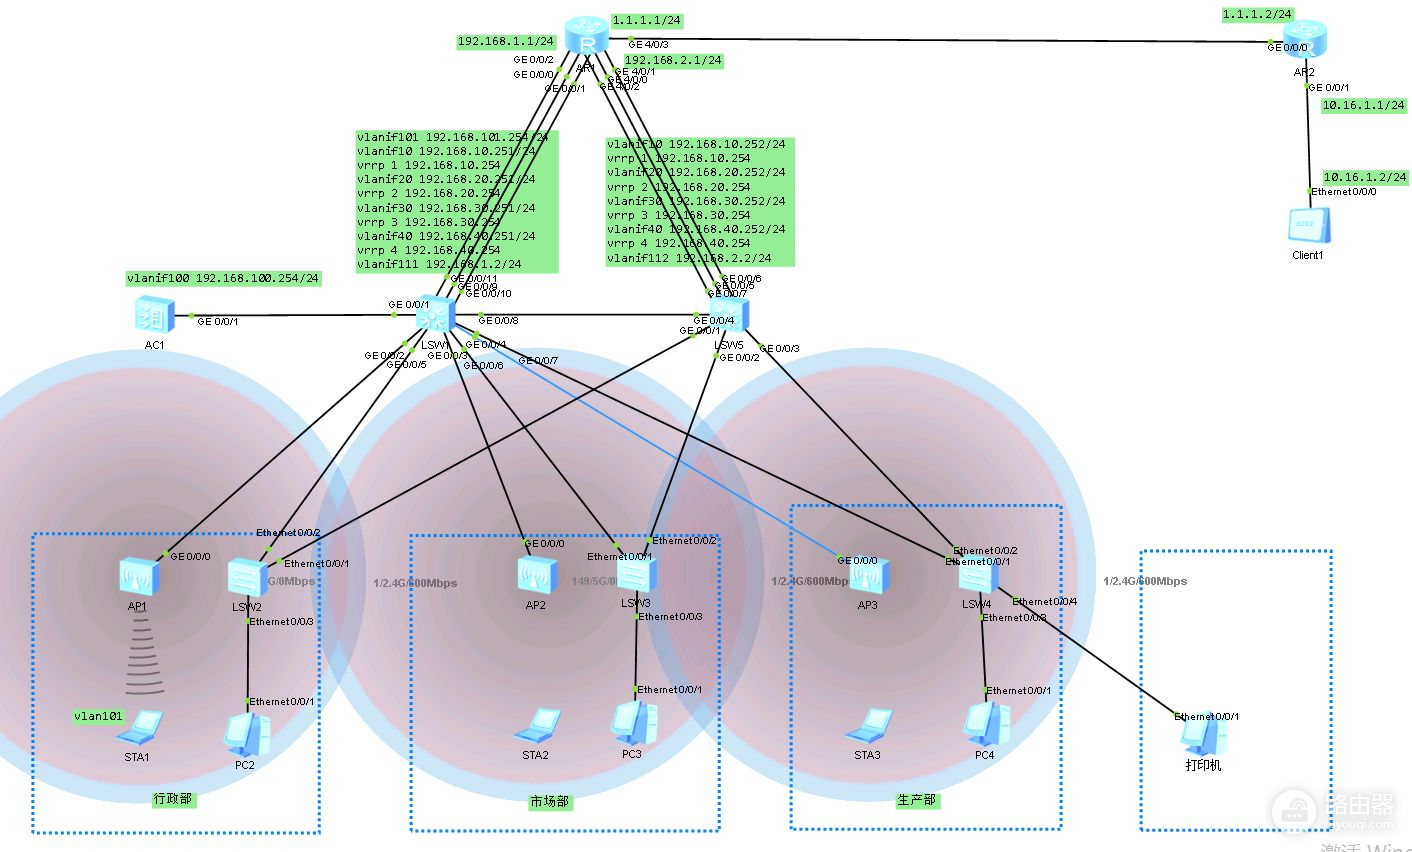 模拟路由器组网(华为模拟器模拟中小型企业办公网和WLAN组网实验)